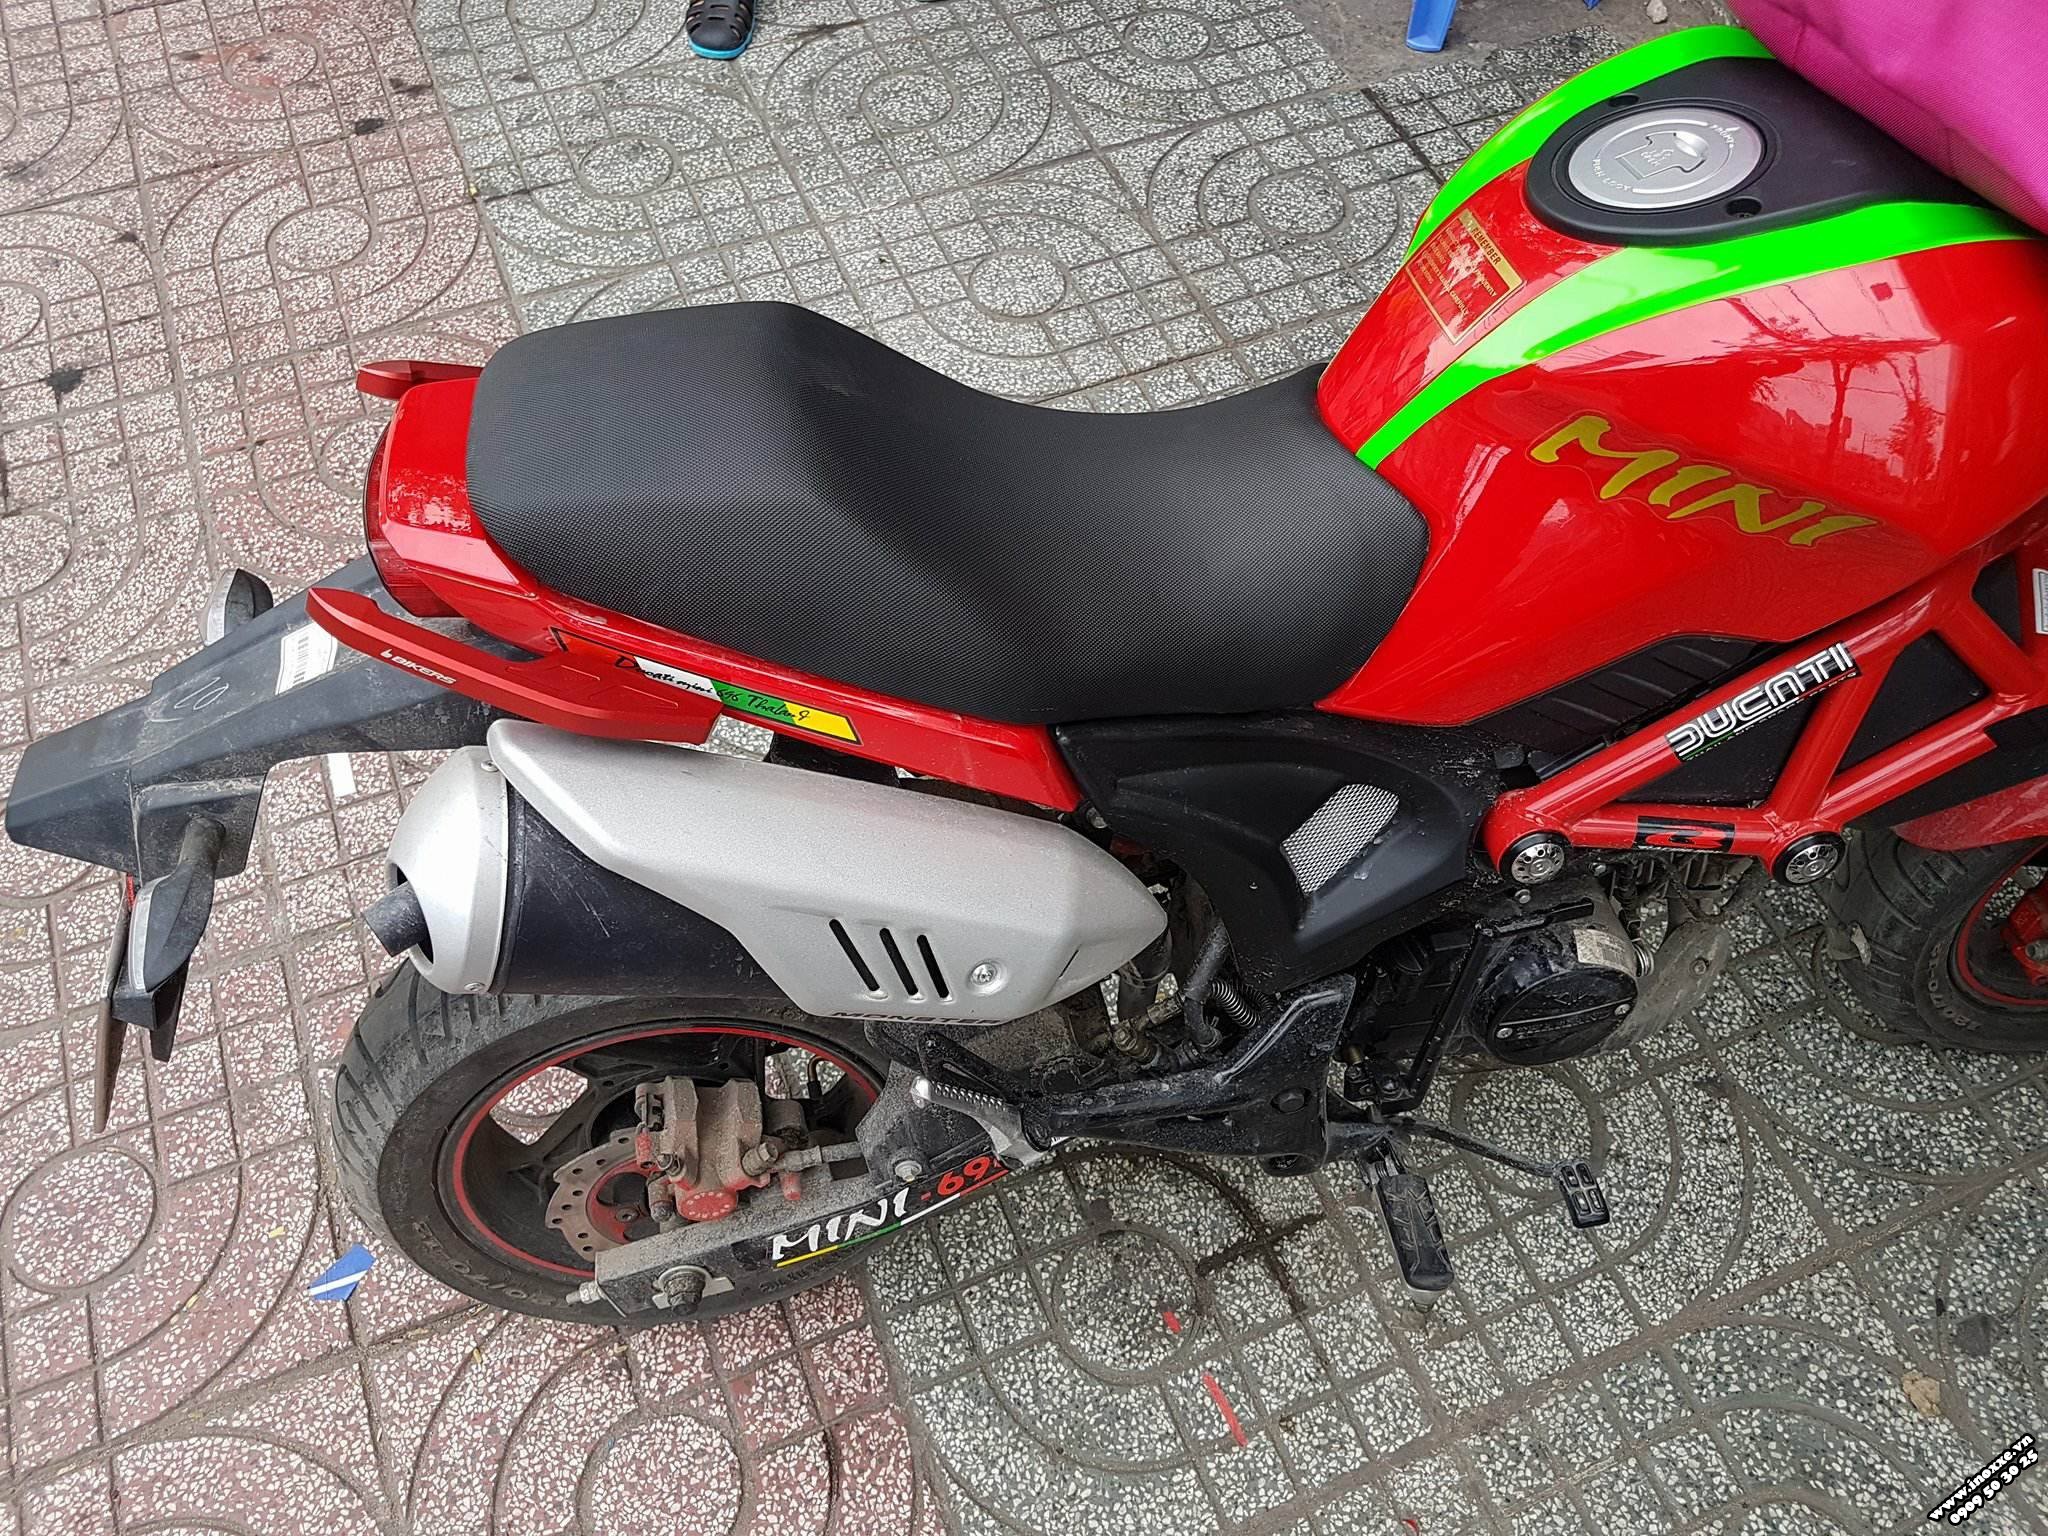 Bán YMH Ducati mini nhập Thái lan 2018 mới nguyên đi đc 1000km chính chủ   2banhvn